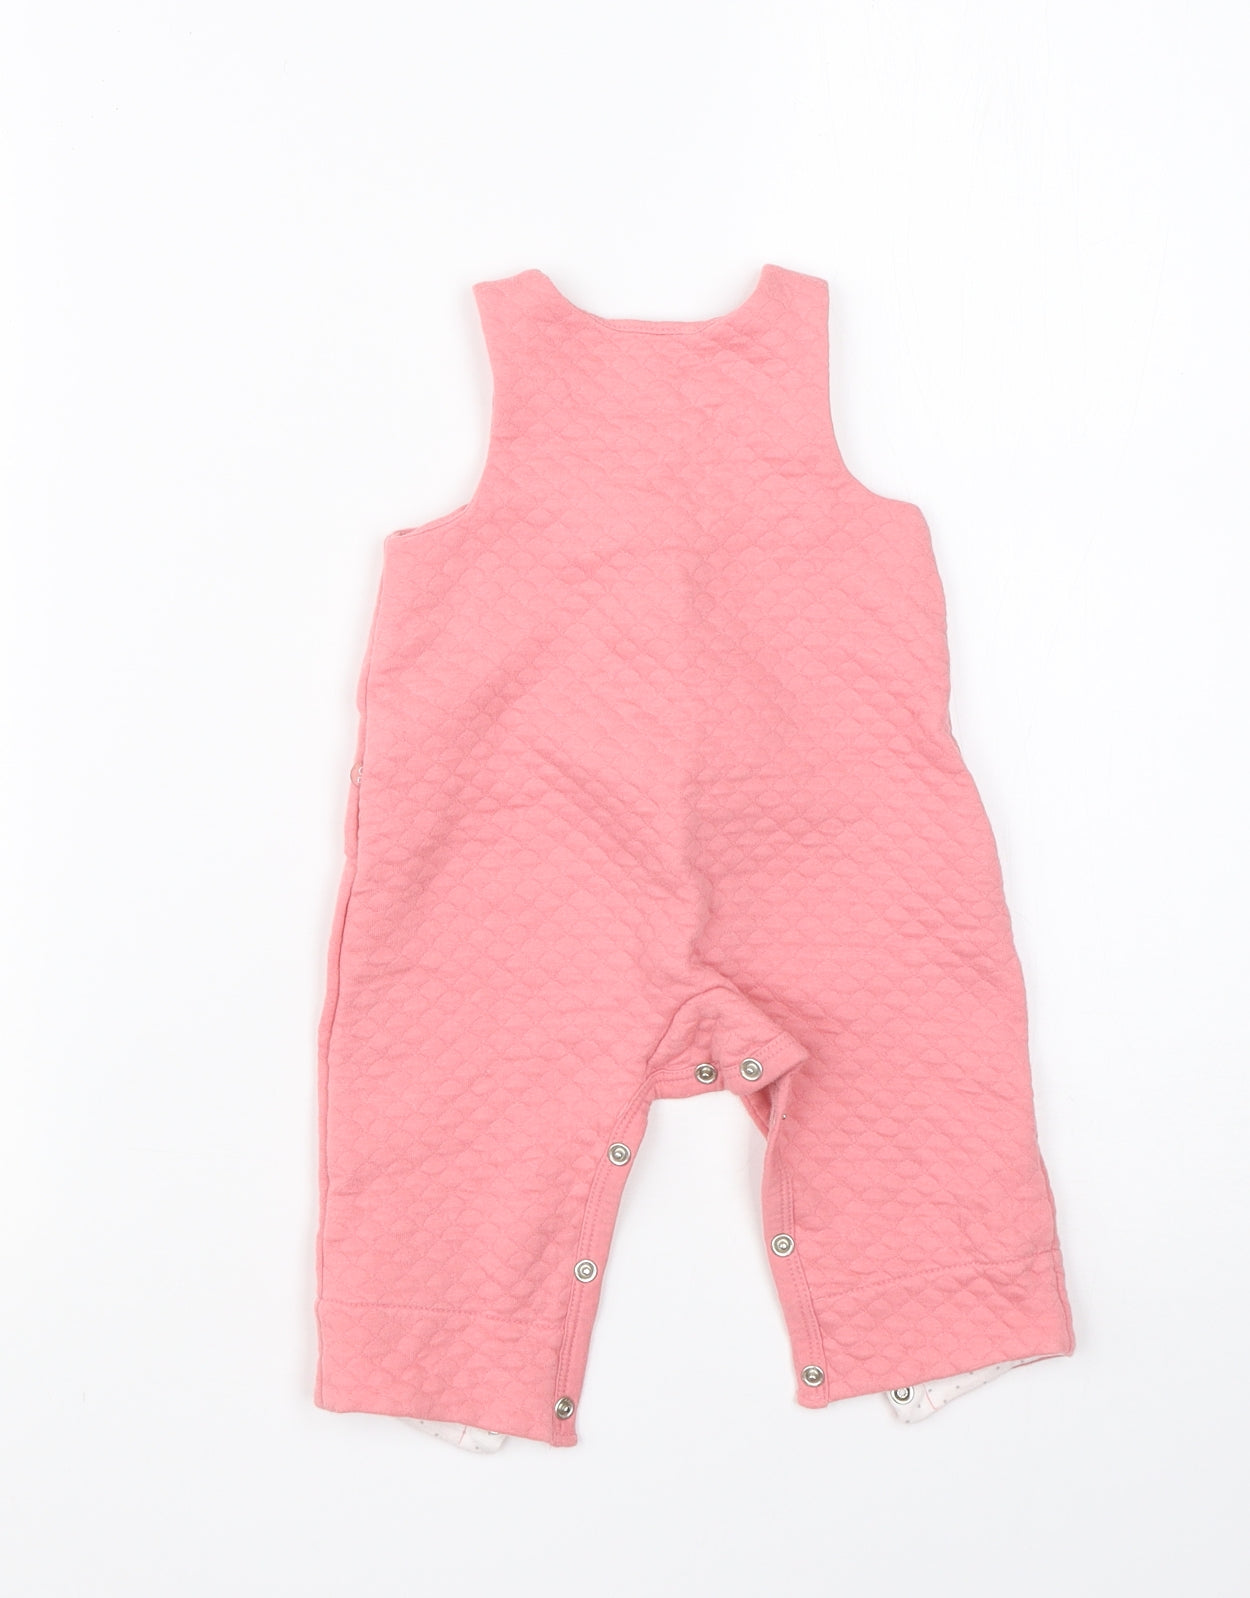 Obaibi Girls Pink  Cotton Babygrow One-Piece Size 3-6 Months